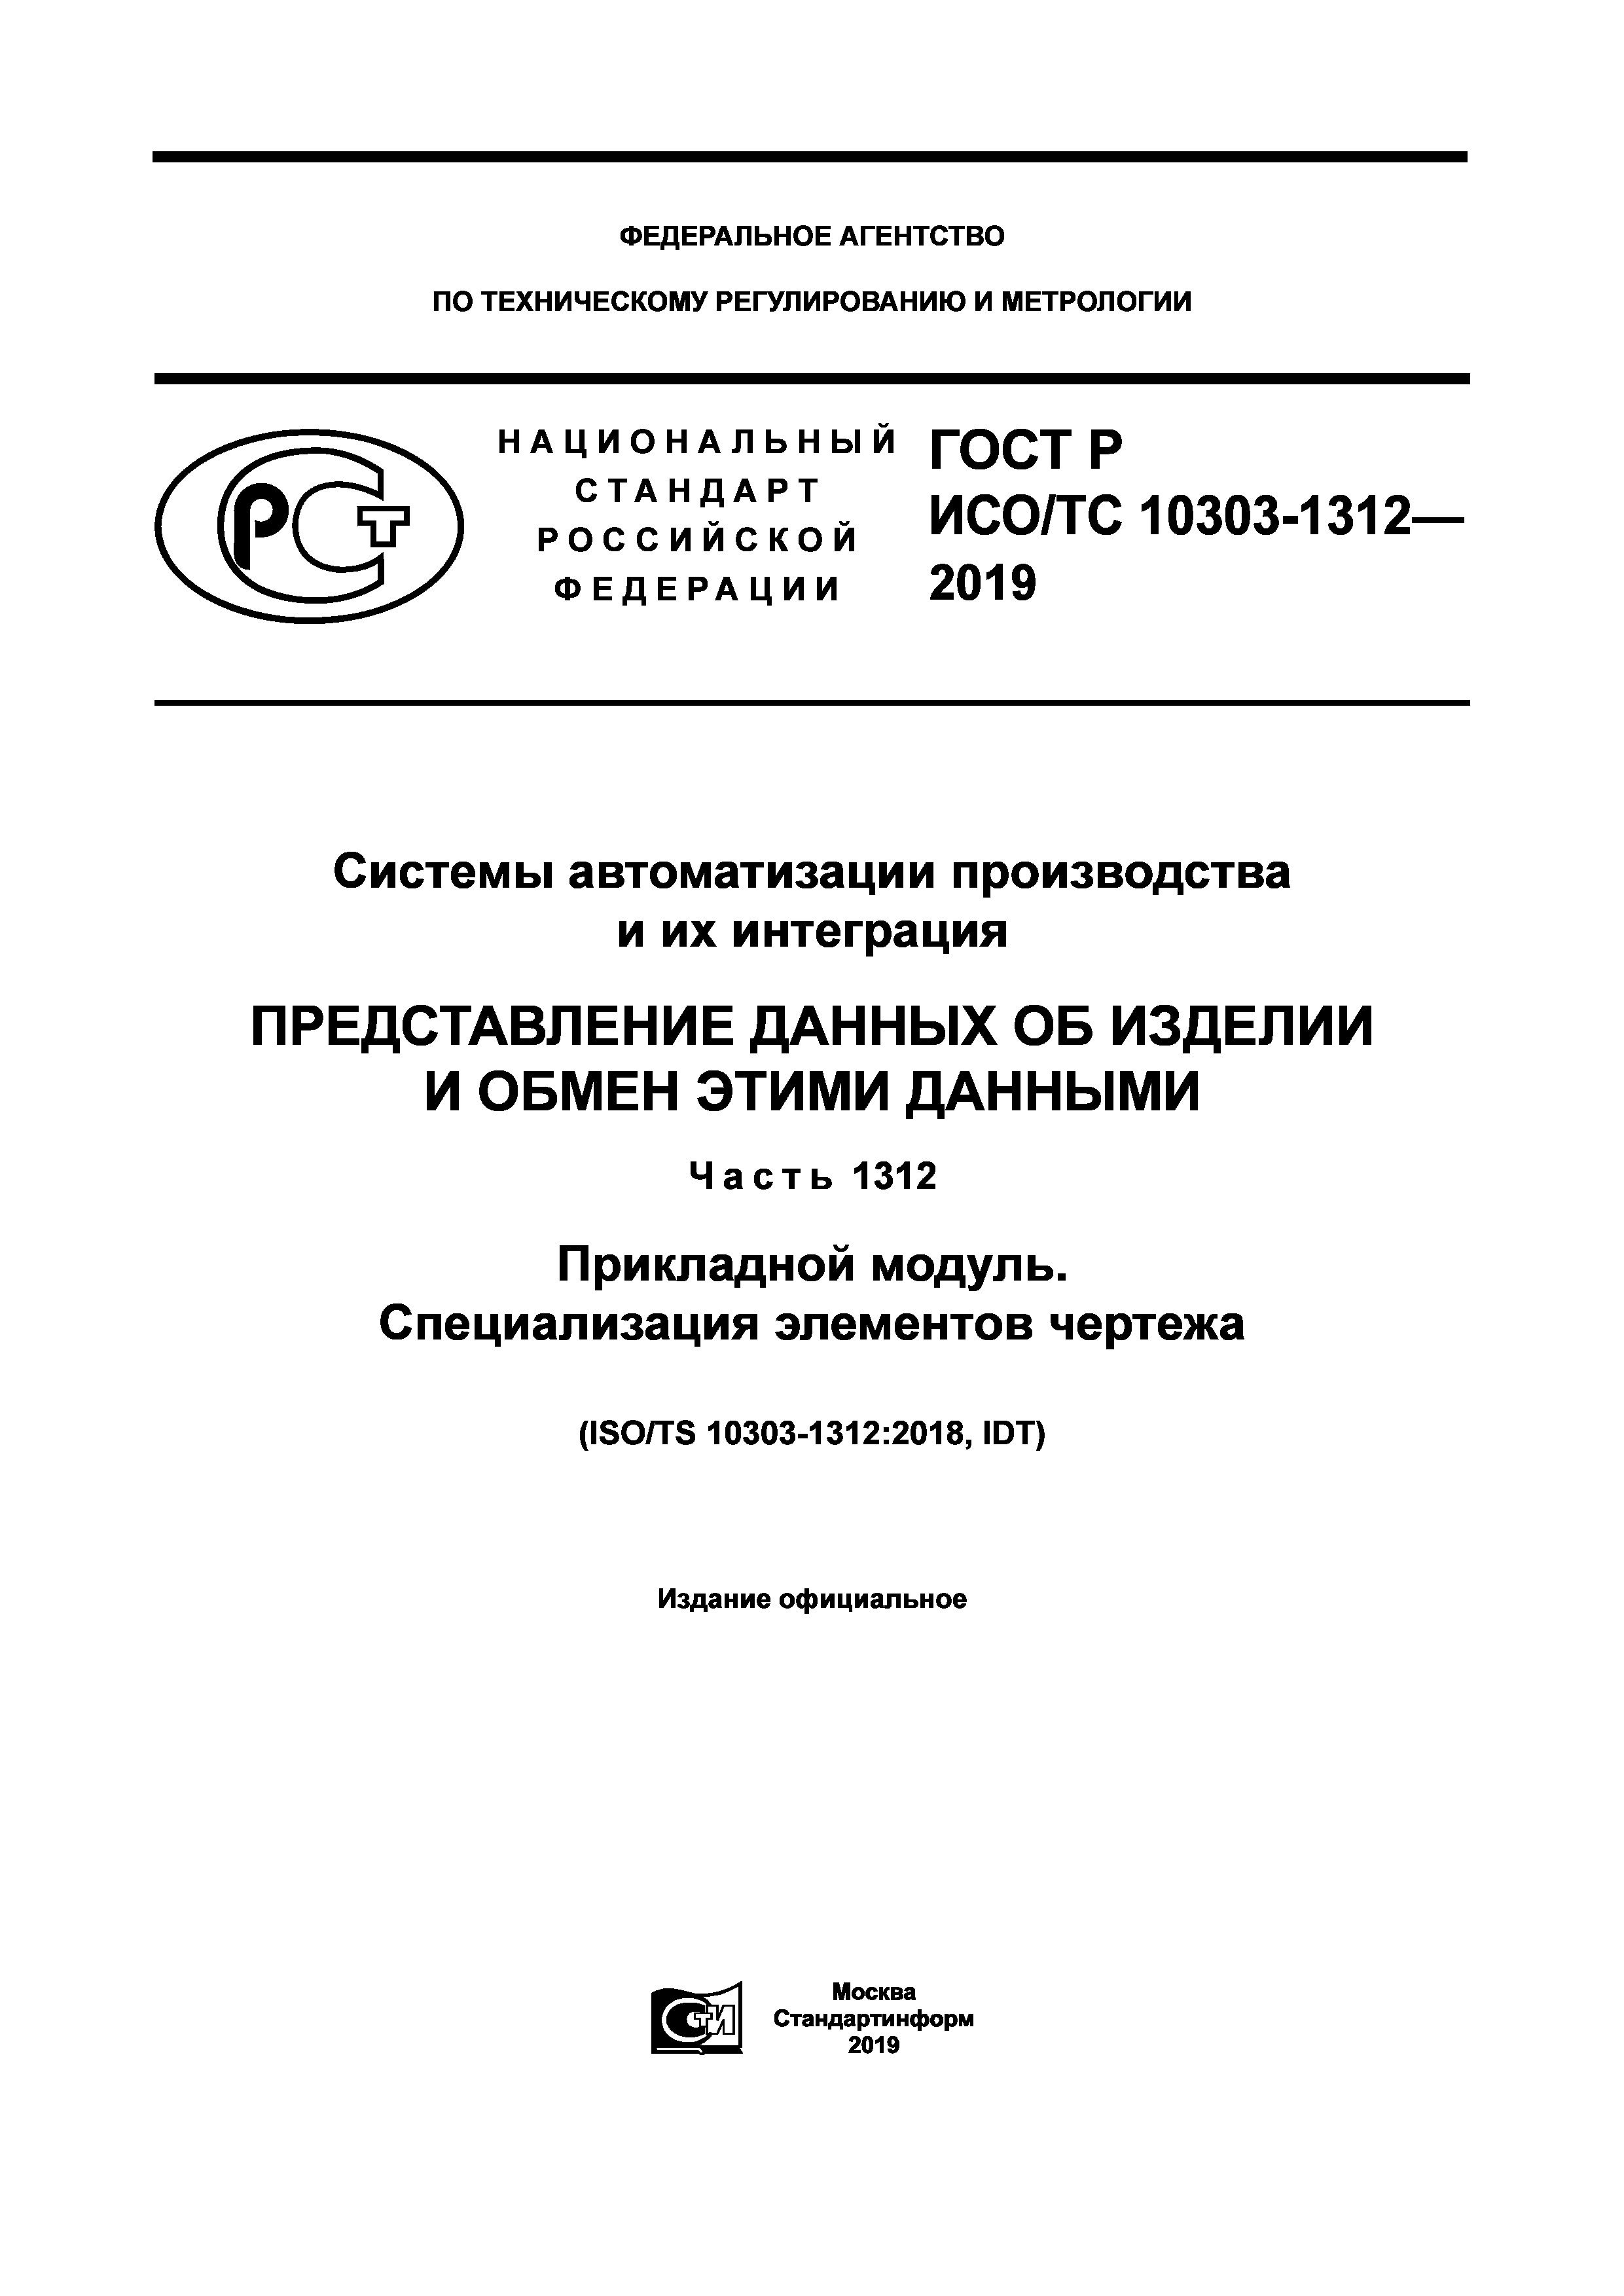 ГОСТ Р ИСО/ТС 10303-1312-2019